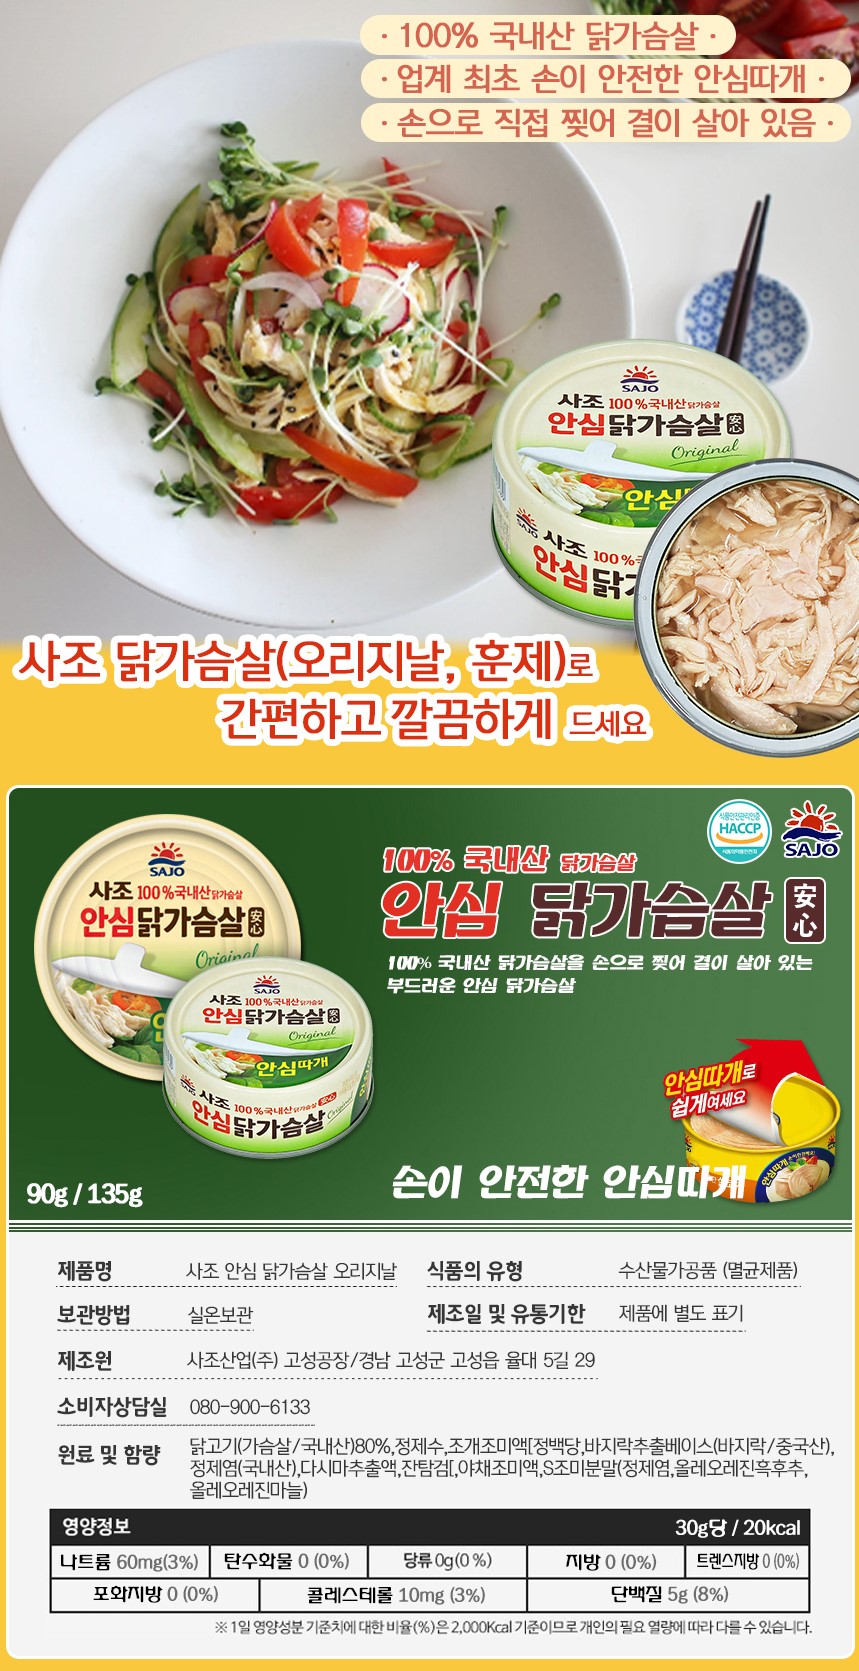 韓國食品-[사조대림] 사조 안심닭가슴살 (오리지날) 135g